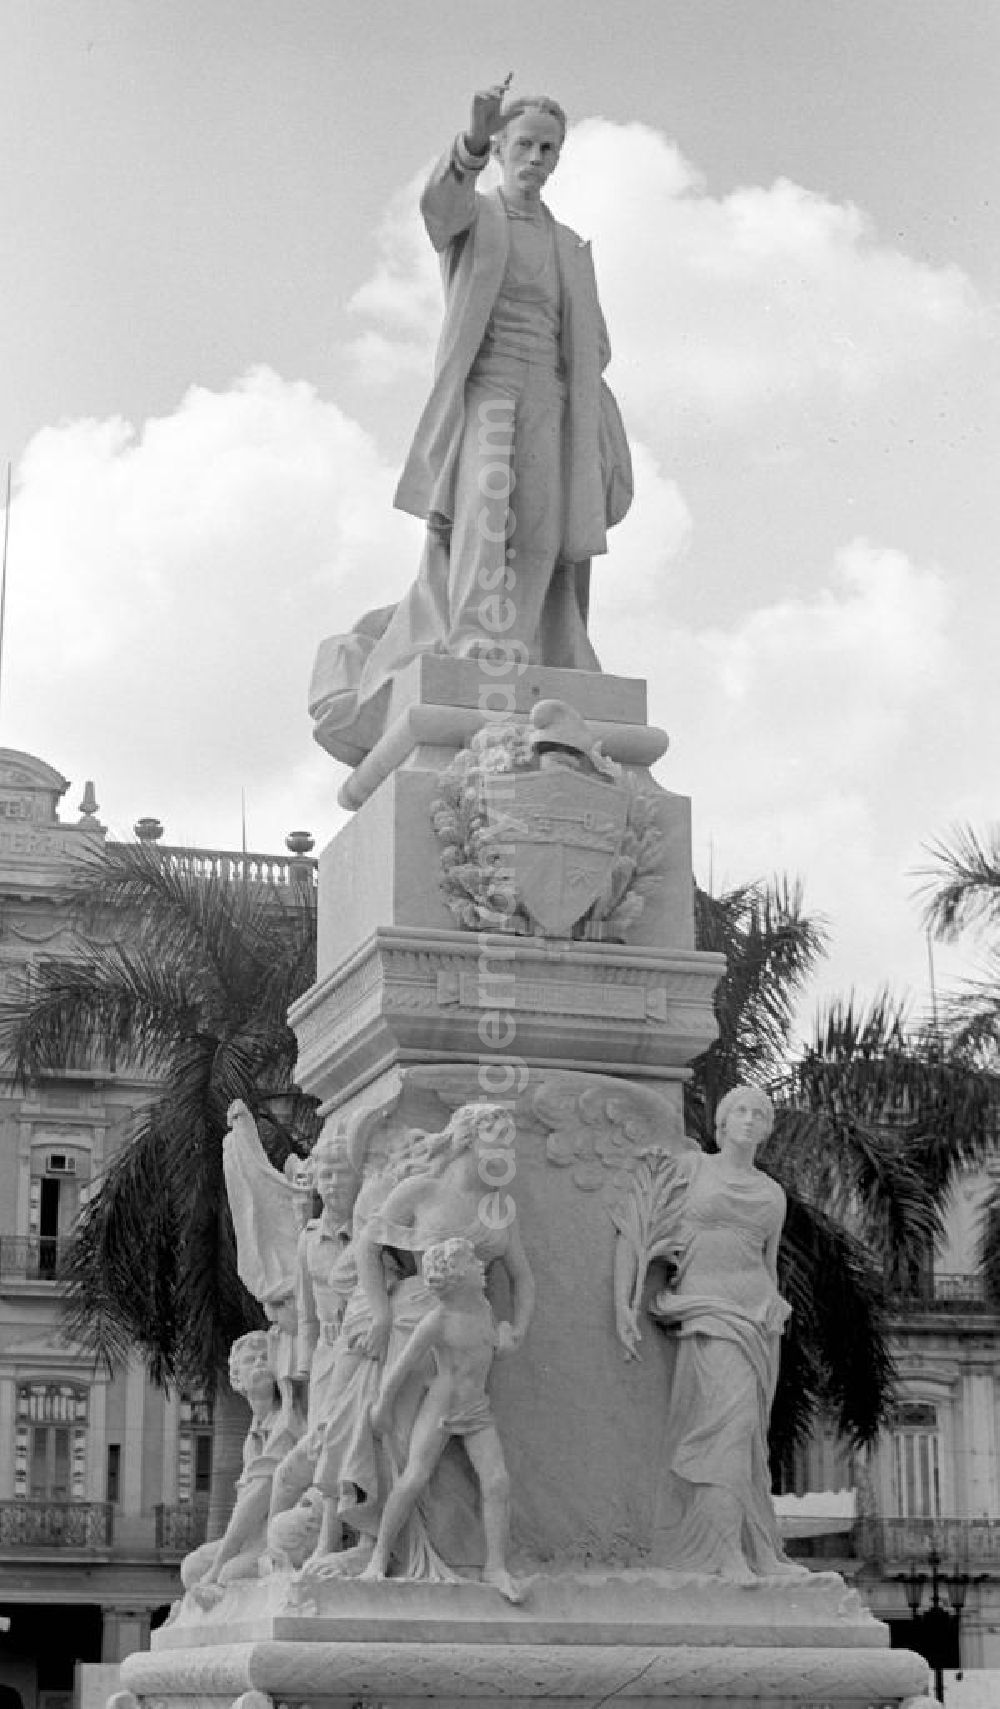 GDR photo archive: Havanna - Blick auf das Monumento José Martí im Central Park in Havanna. José Martí ist Symbolfigur des Unabhängigkeitskampfes Kubas gegen Spanien und wird in Kuba als Volksheld verehrt.